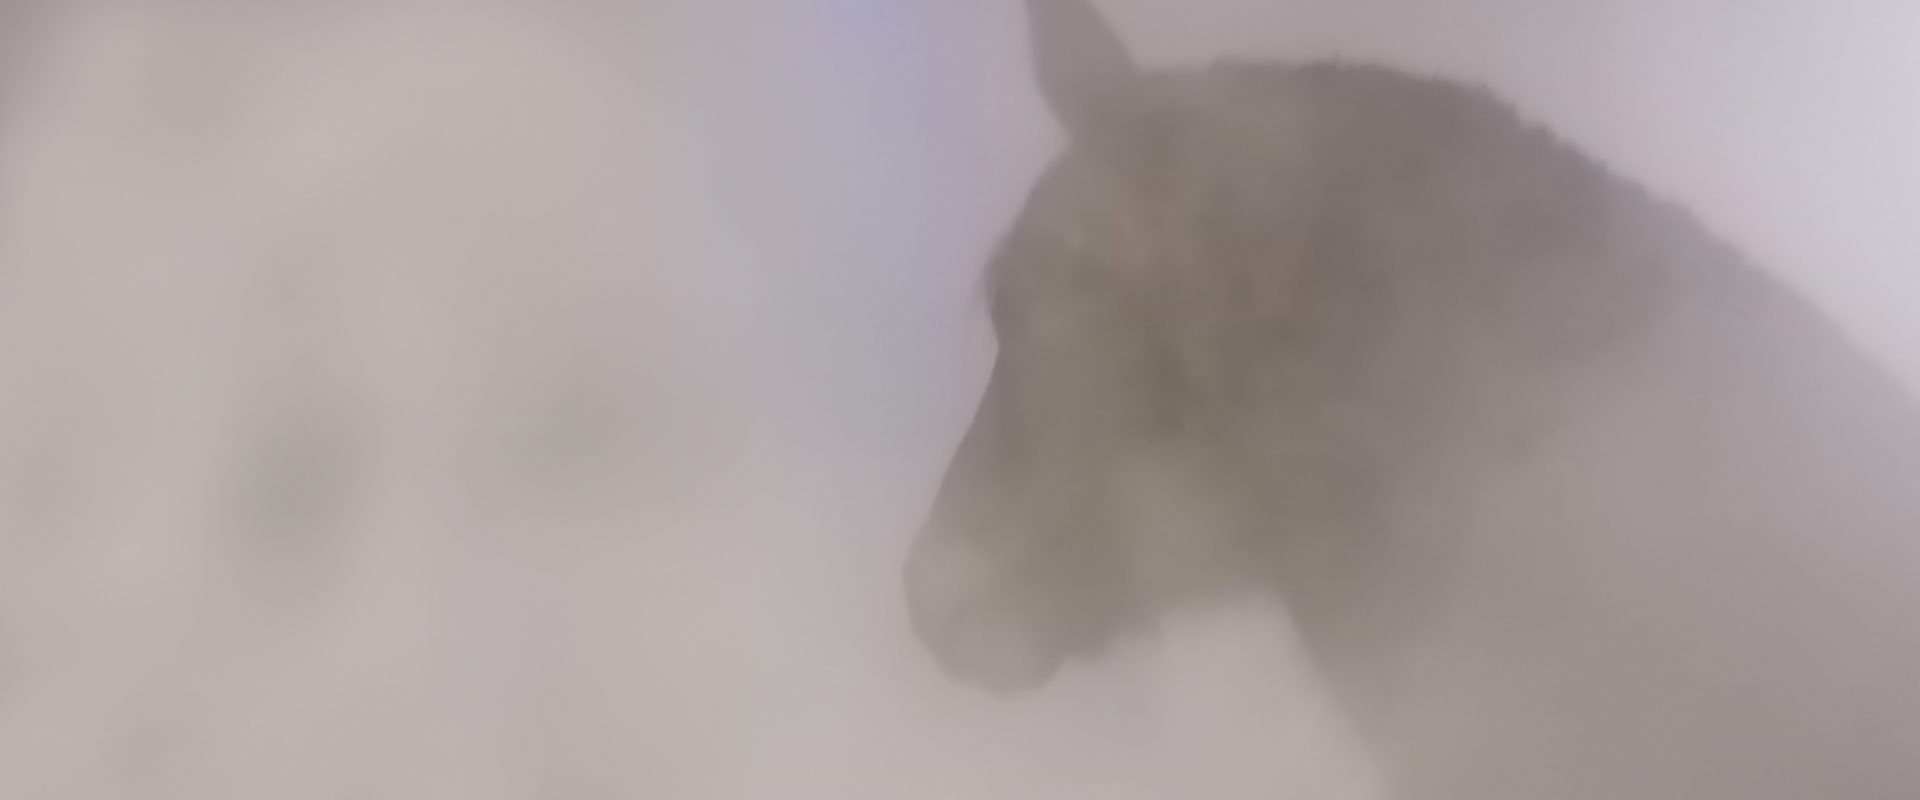 Pferdeinhalation, Pferdeinhalatoren, Inhalatoren für Pferde bei Husten